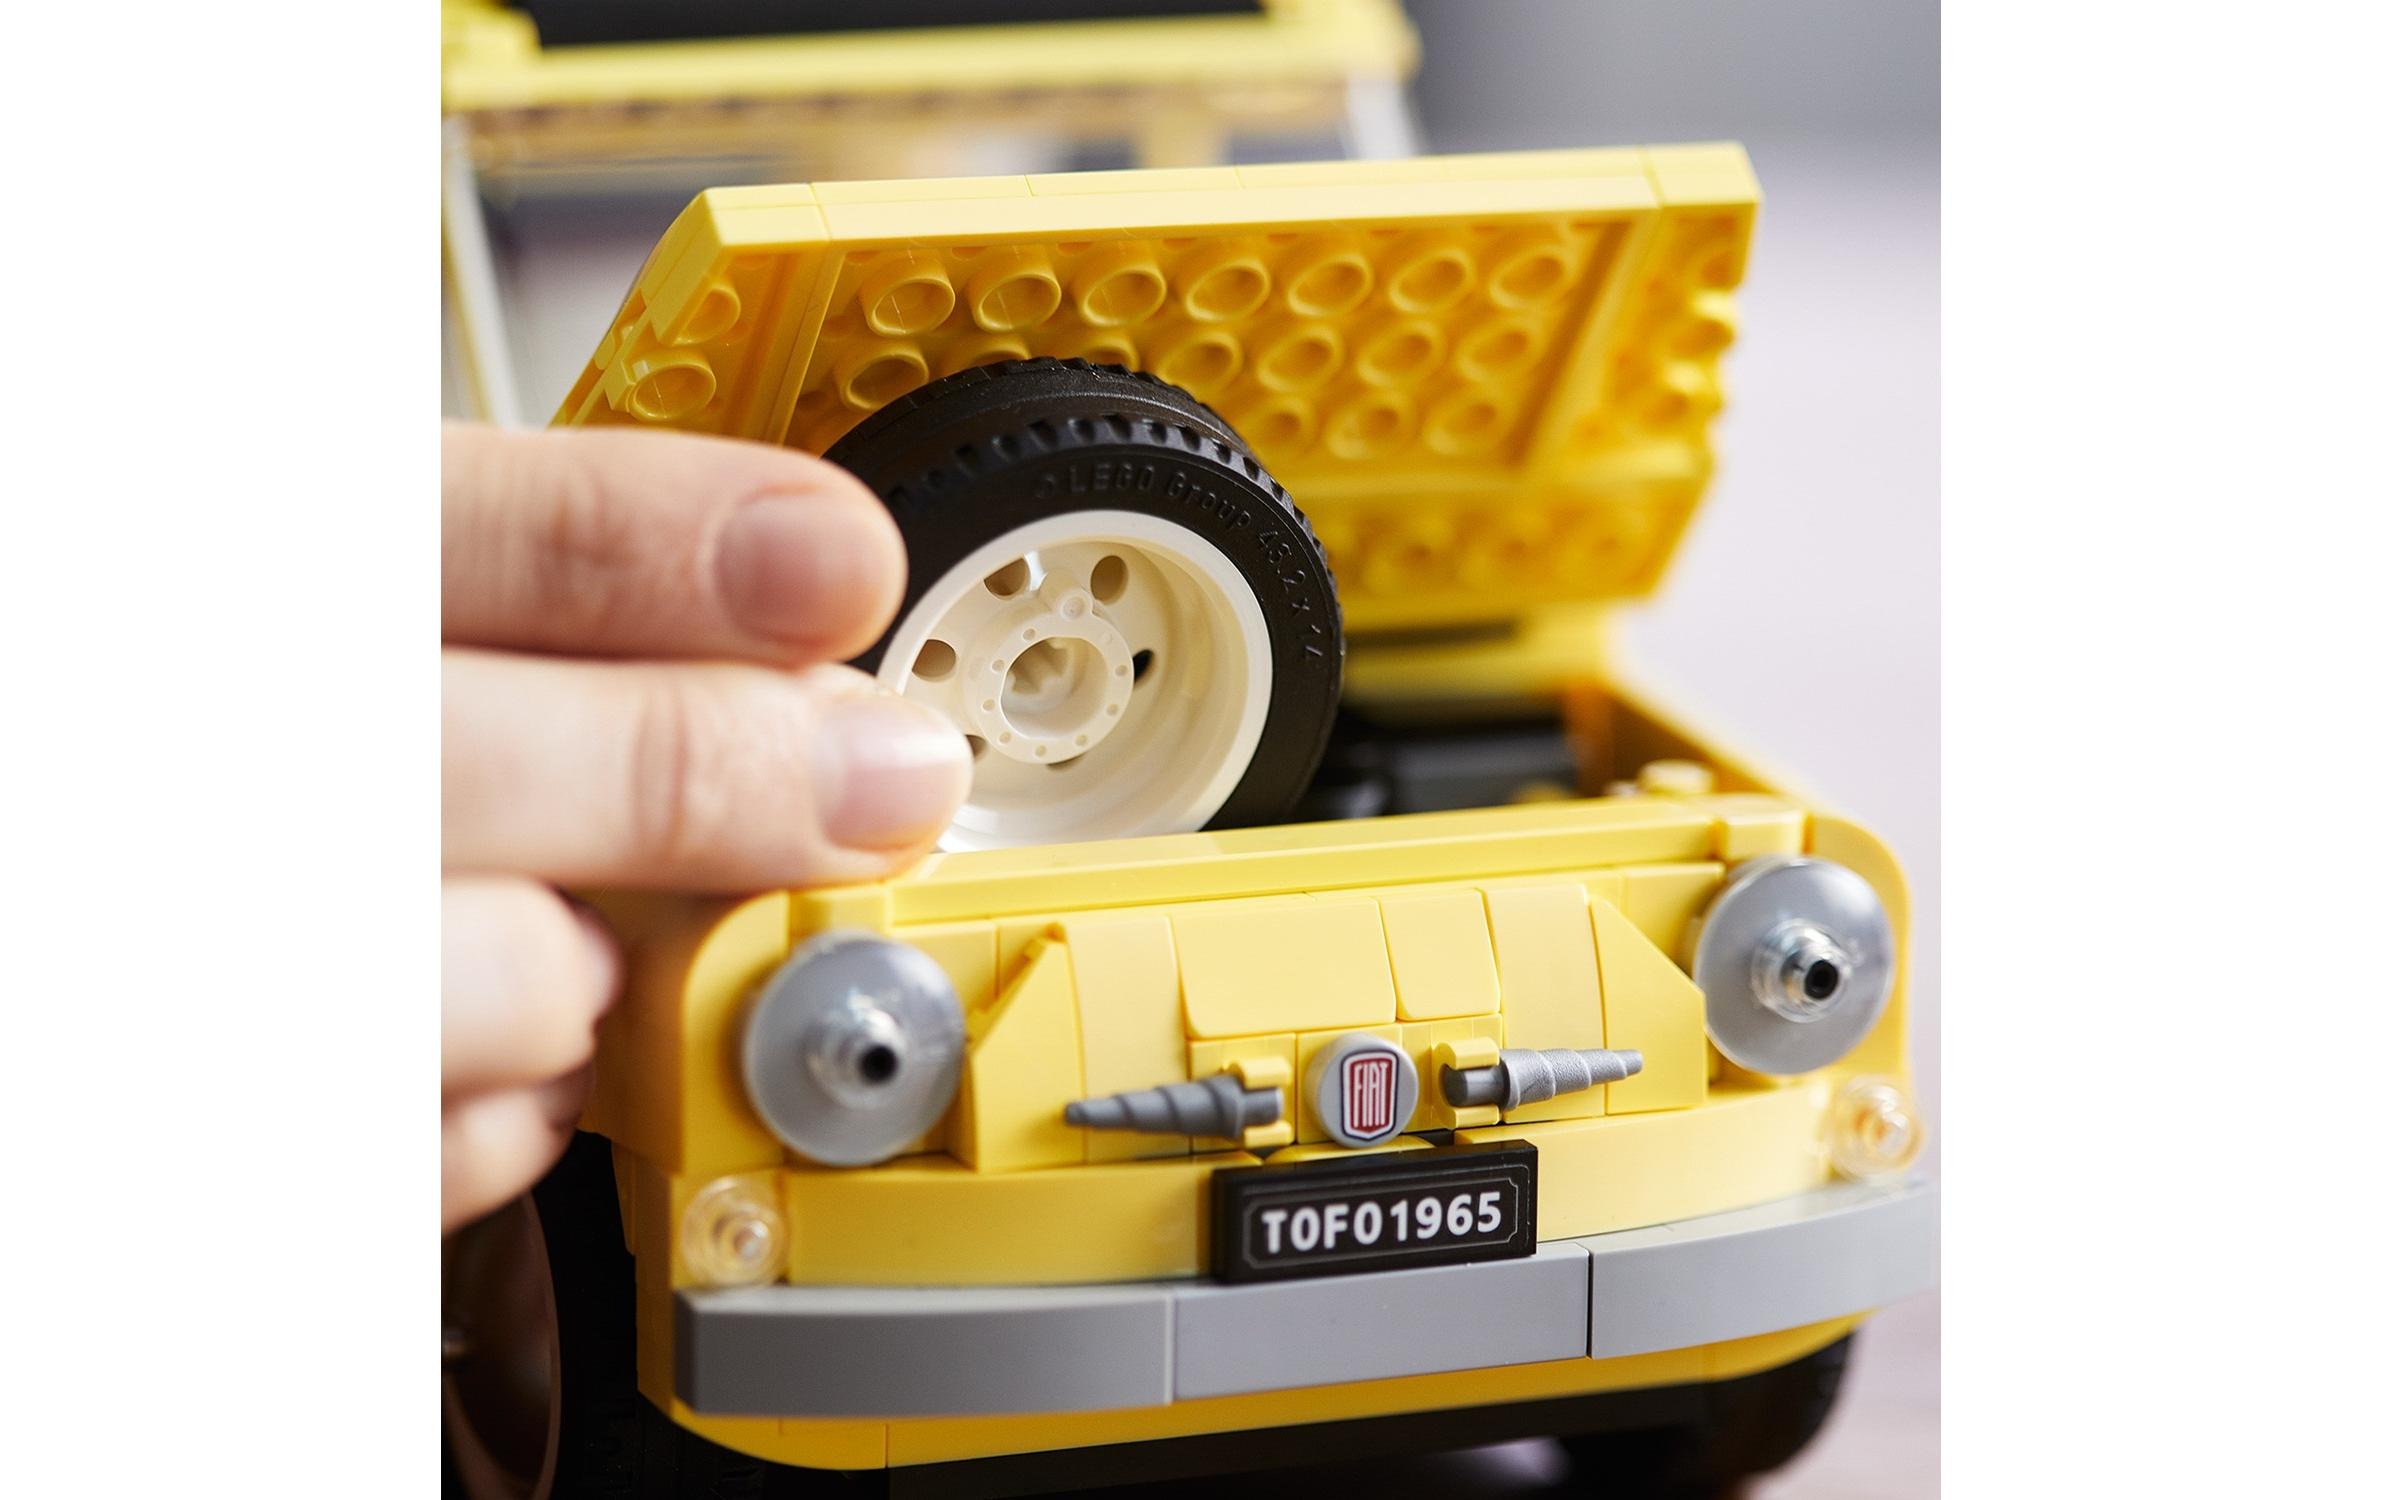 LEGO® Spielbausteine »Creator Fiat 500«, (960 St.)